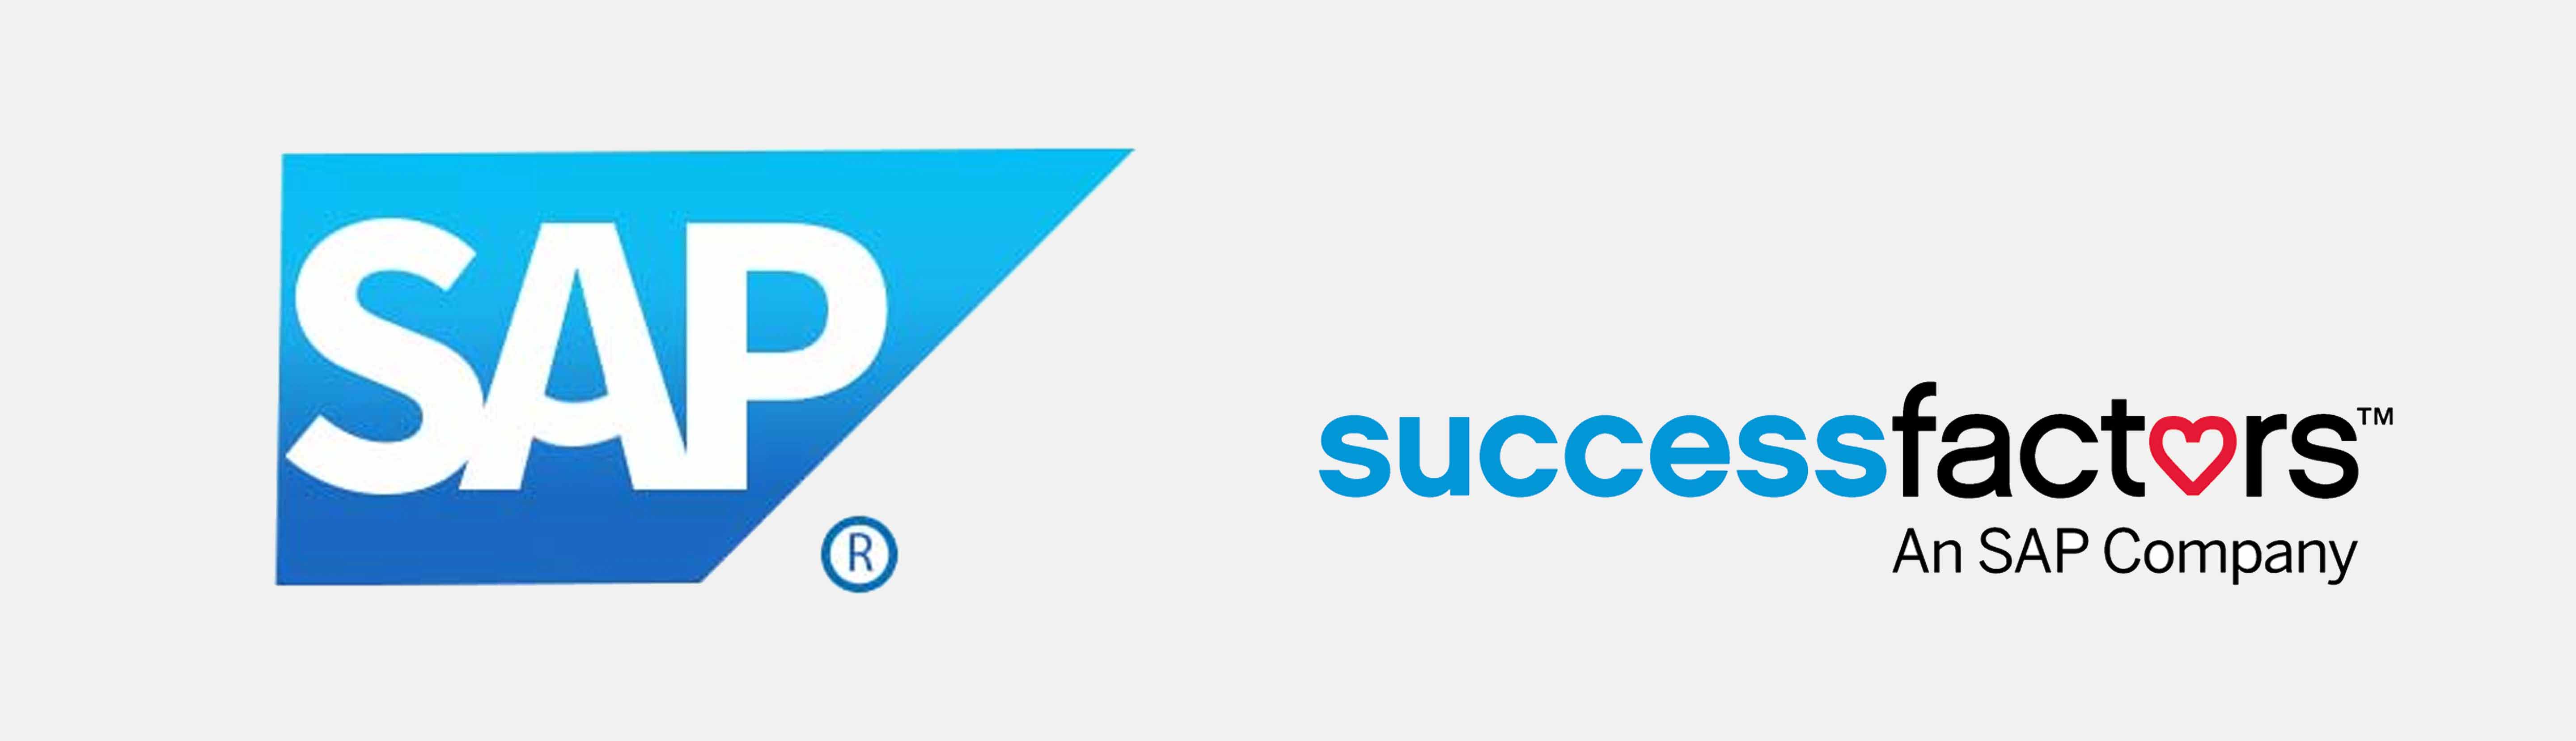 SuccessFactors Logo - SAP Sucessfactors Training in Chennai, India